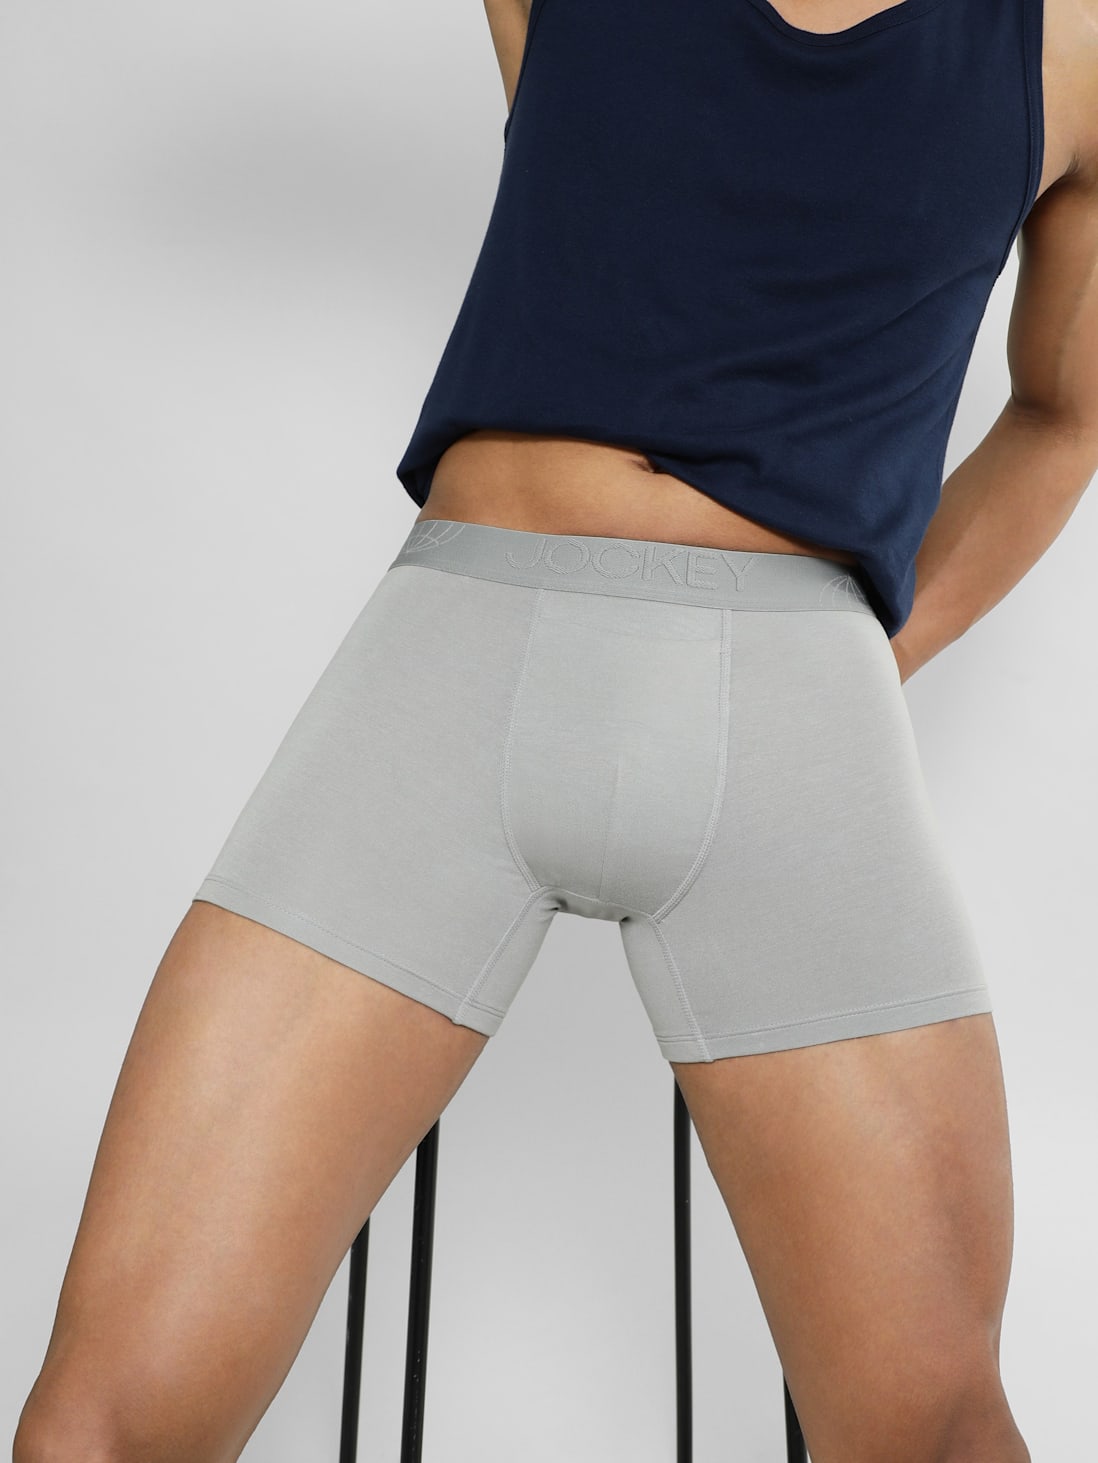 Woolpower LITE Men's Boxer Brief Underwear